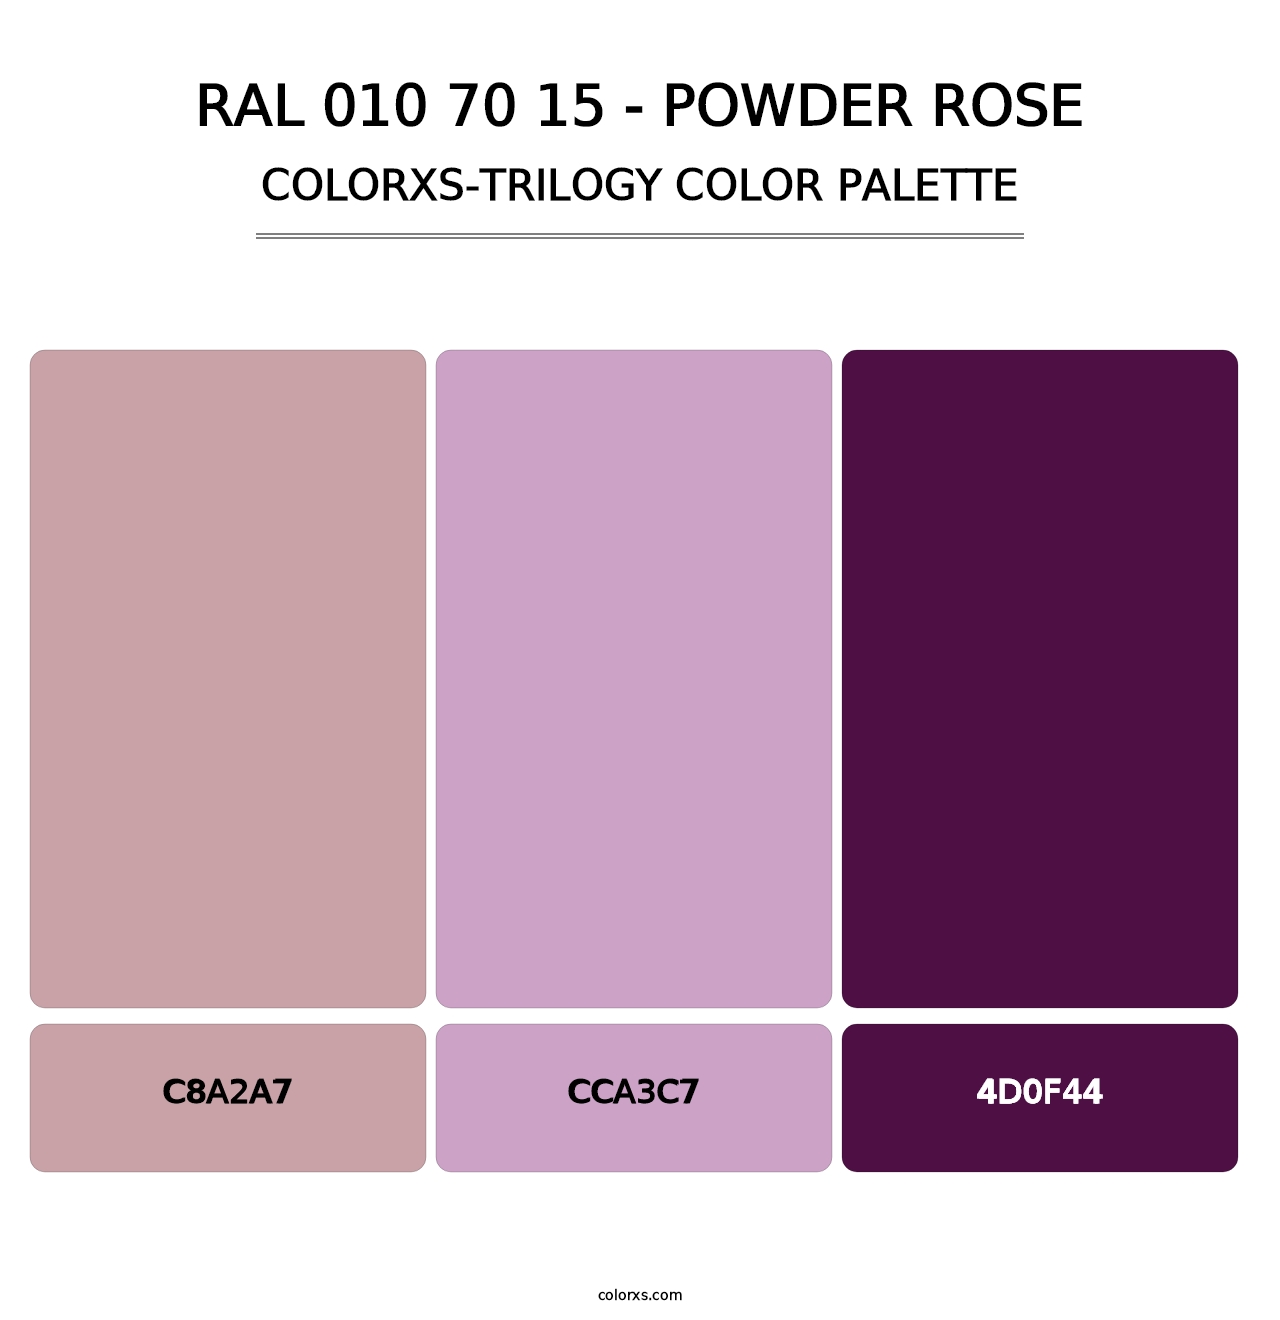 RAL 010 70 15 - Powder Rose - Colorxs Trilogy Palette